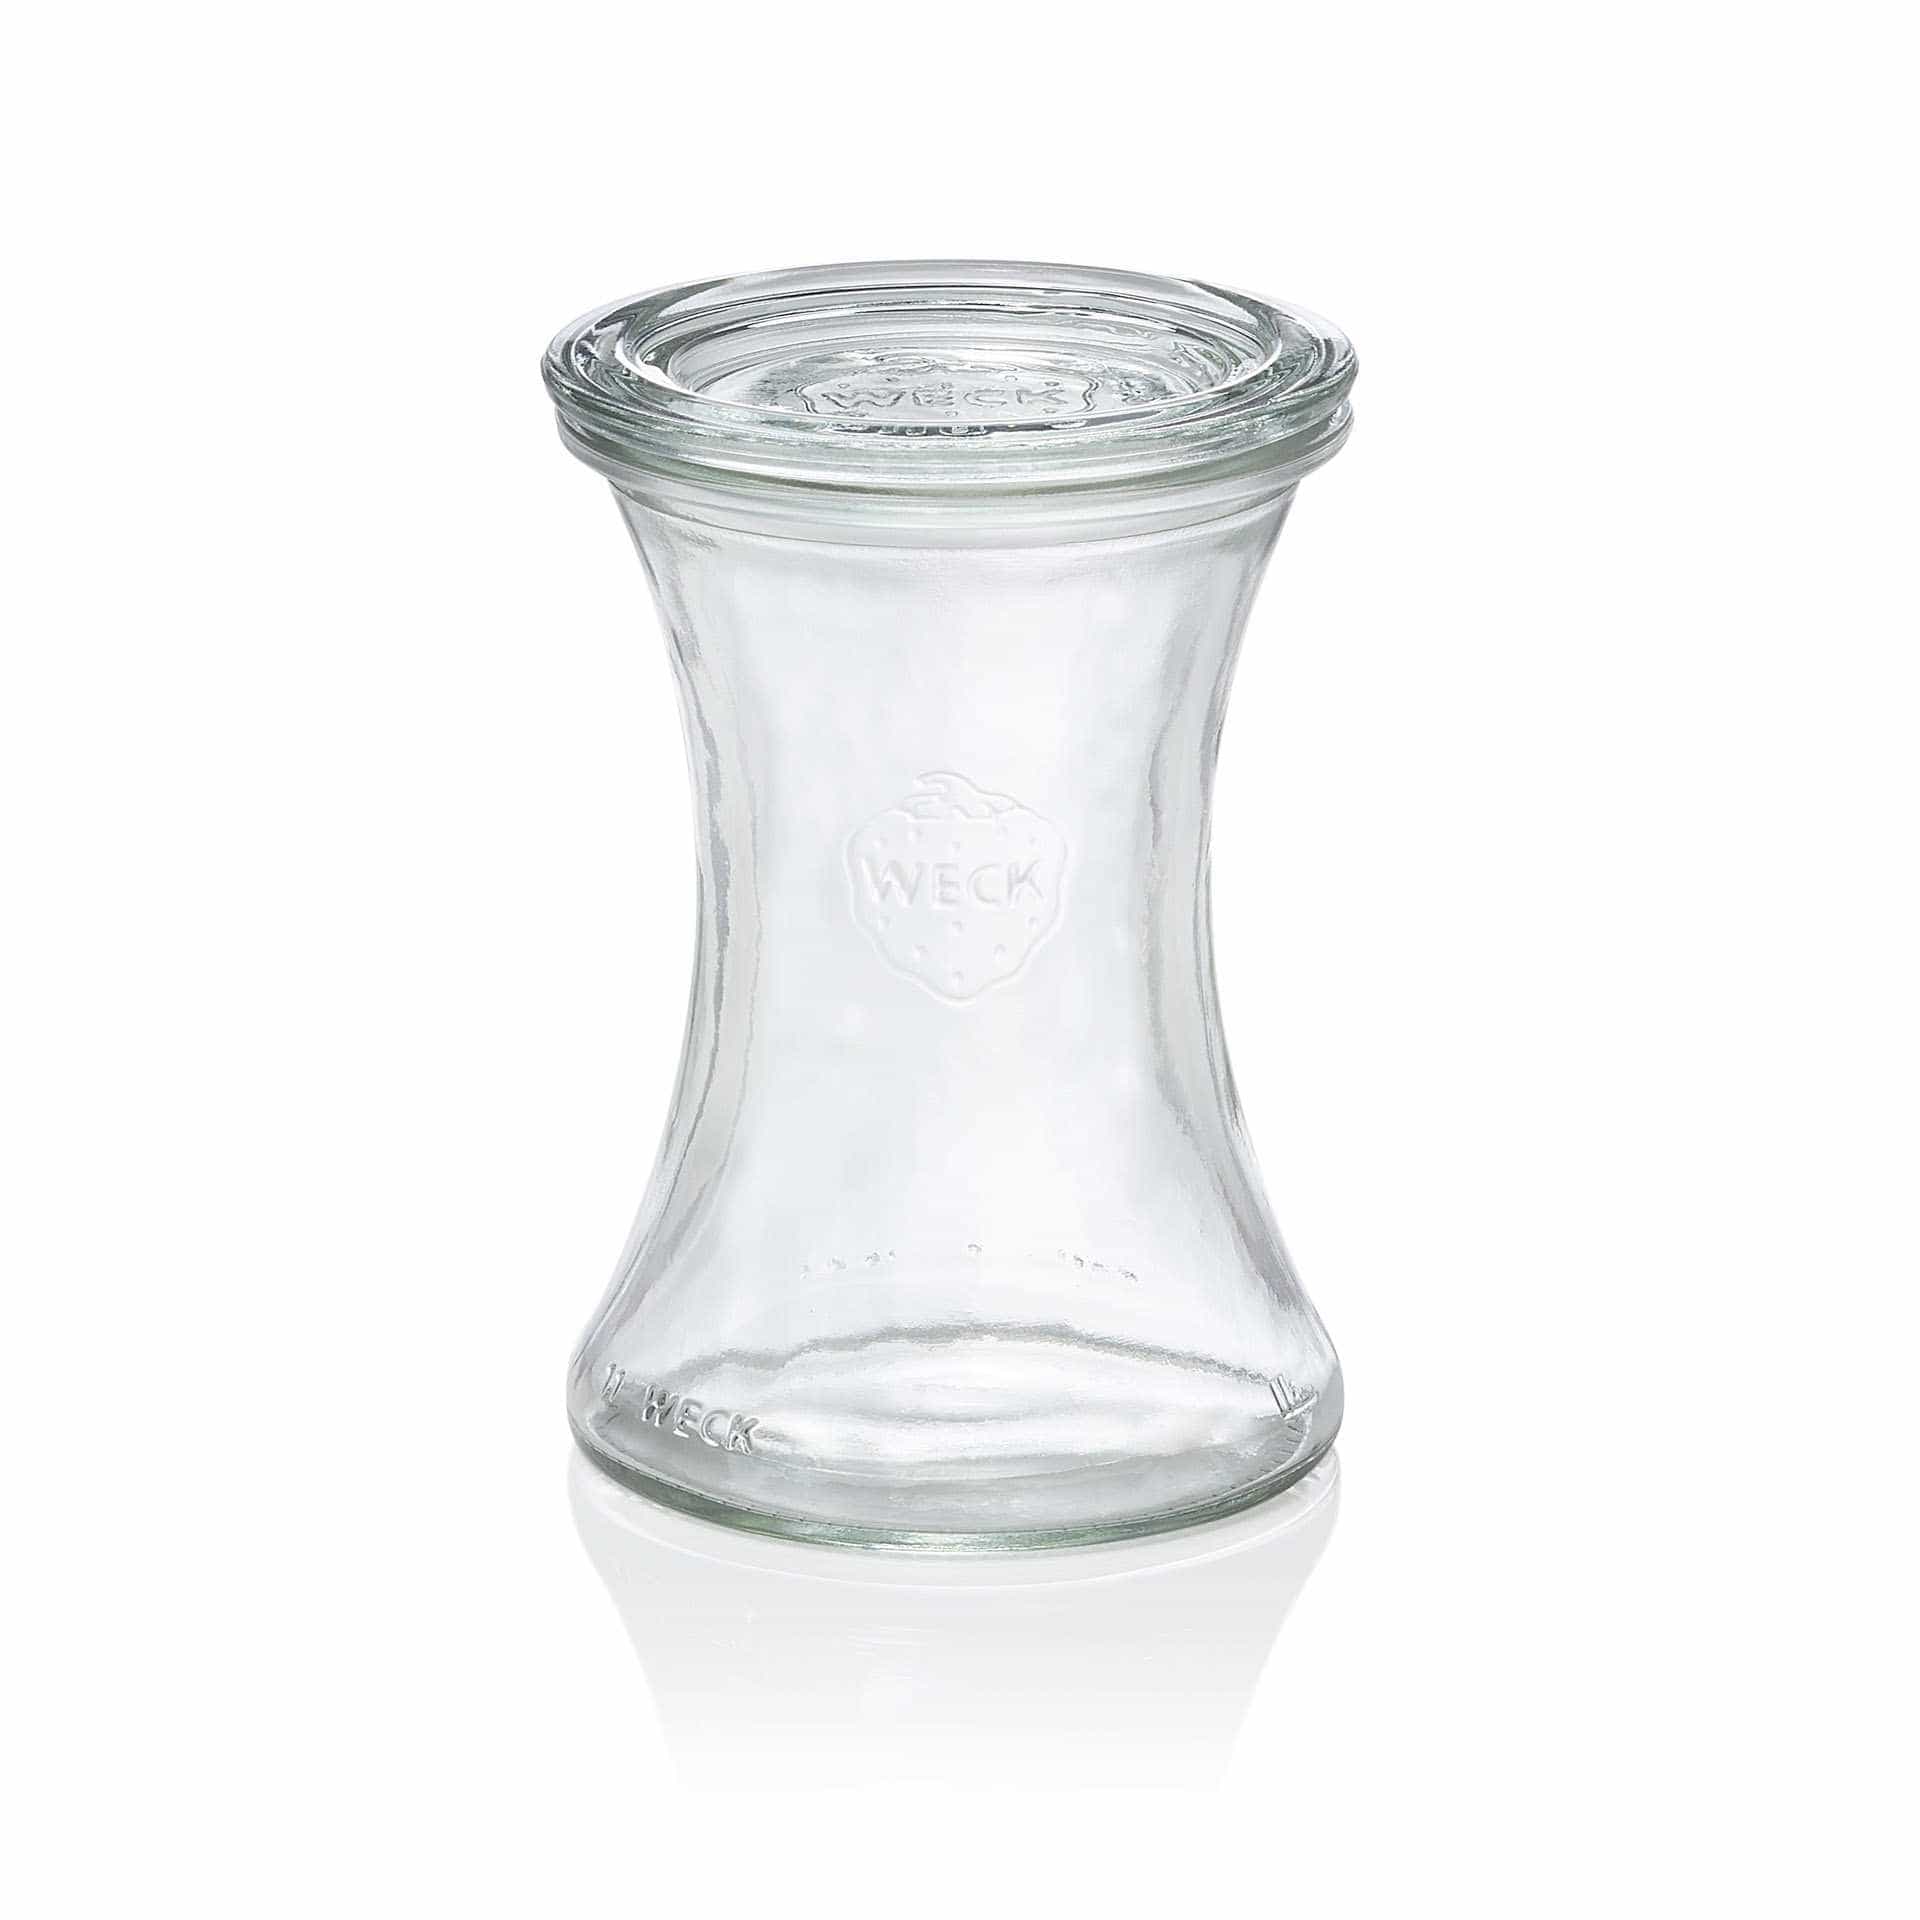 Delikatessenglas - Set á 6 Stück - Serie Delicacy - Abm. 12,2 cm - Ø oben / unten 8,0 / 8,7 cm - Inhalt 0,37 l - Glas - 996-A